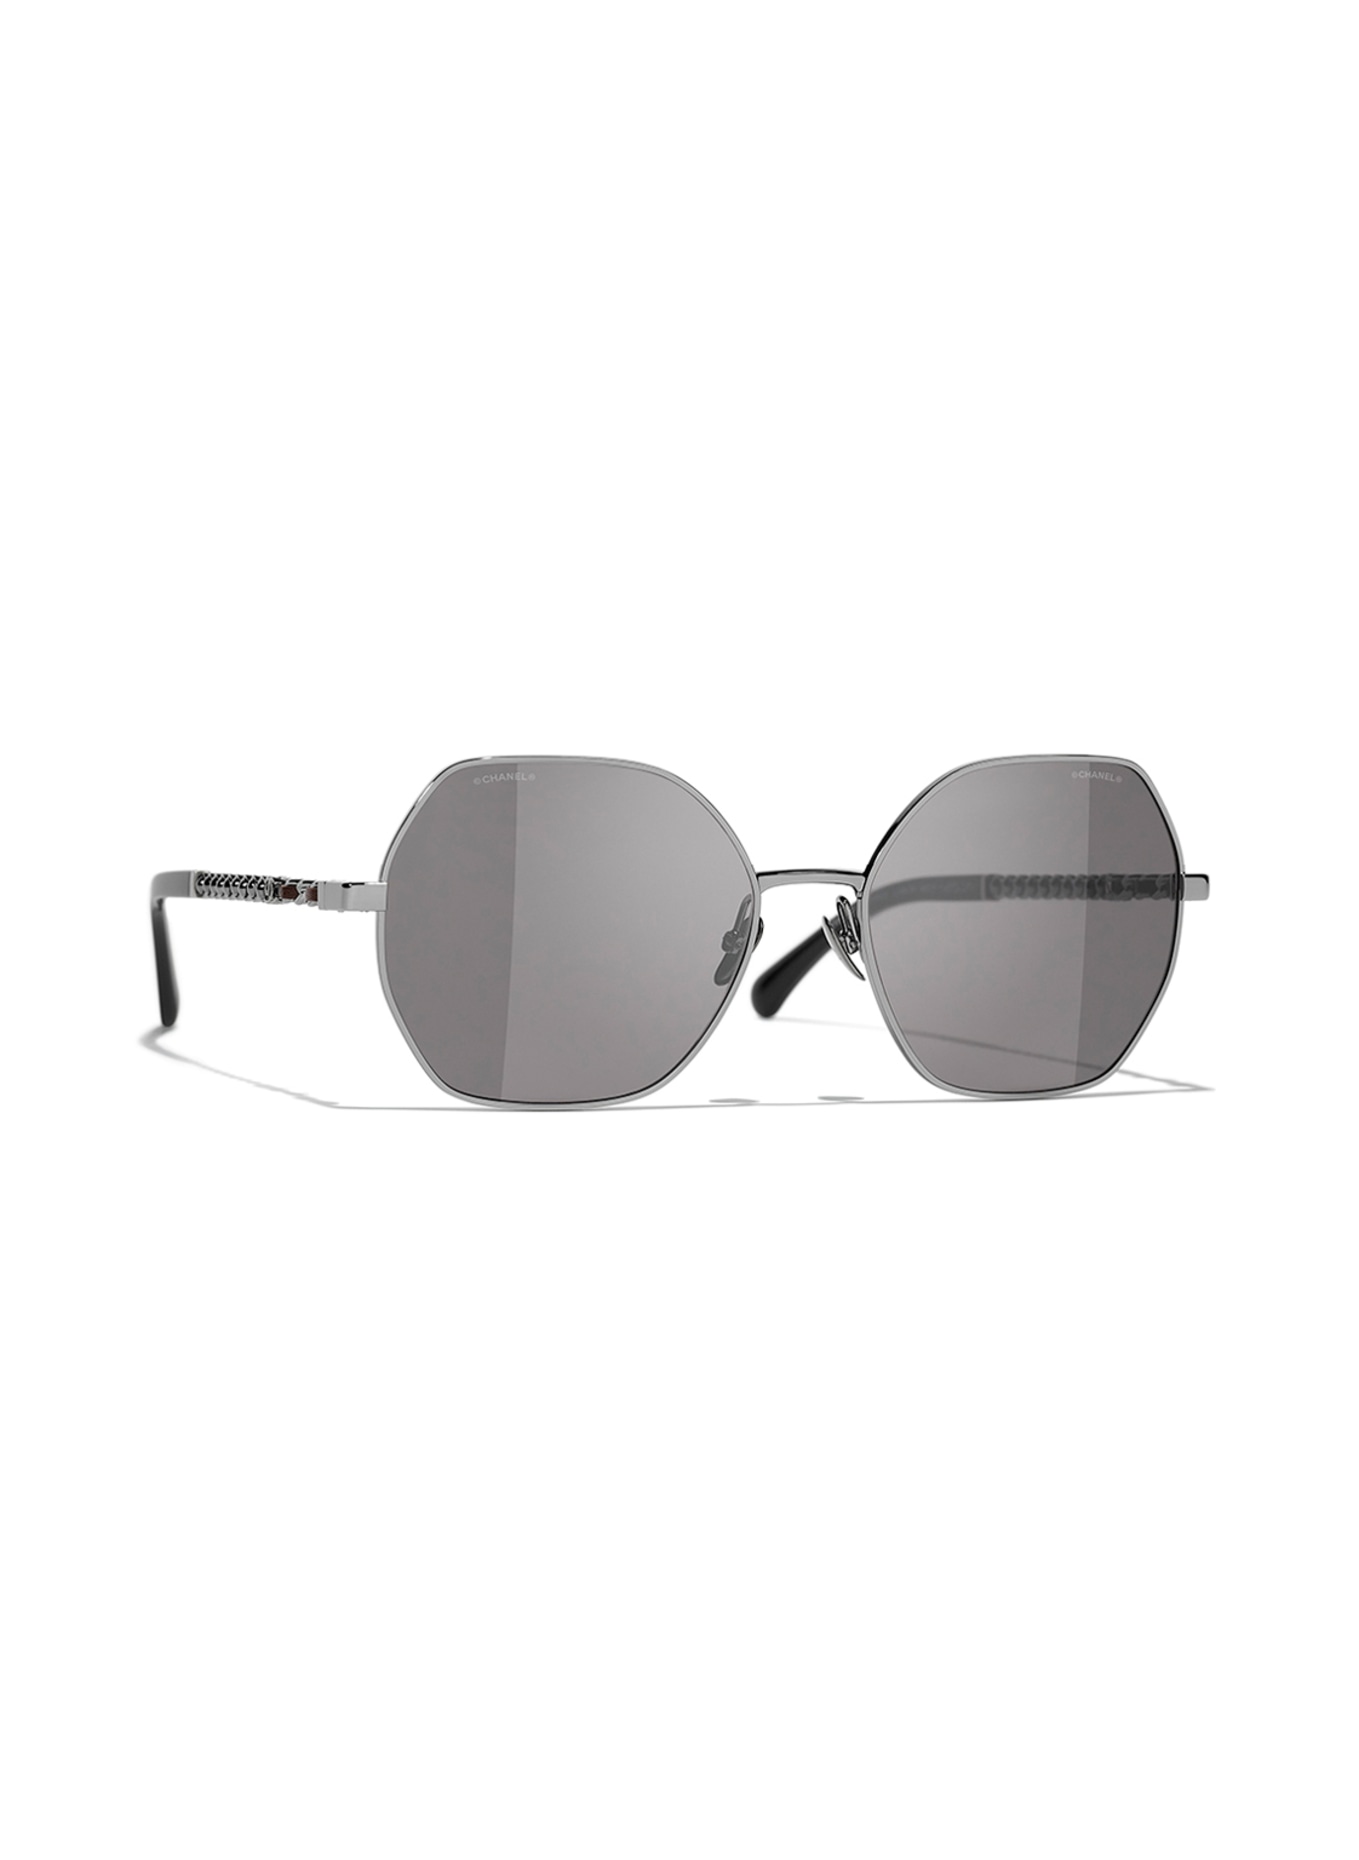 CHANEL Square sunglasses, Color: C10833 - GRAY/DARK GRAY (Image 1)